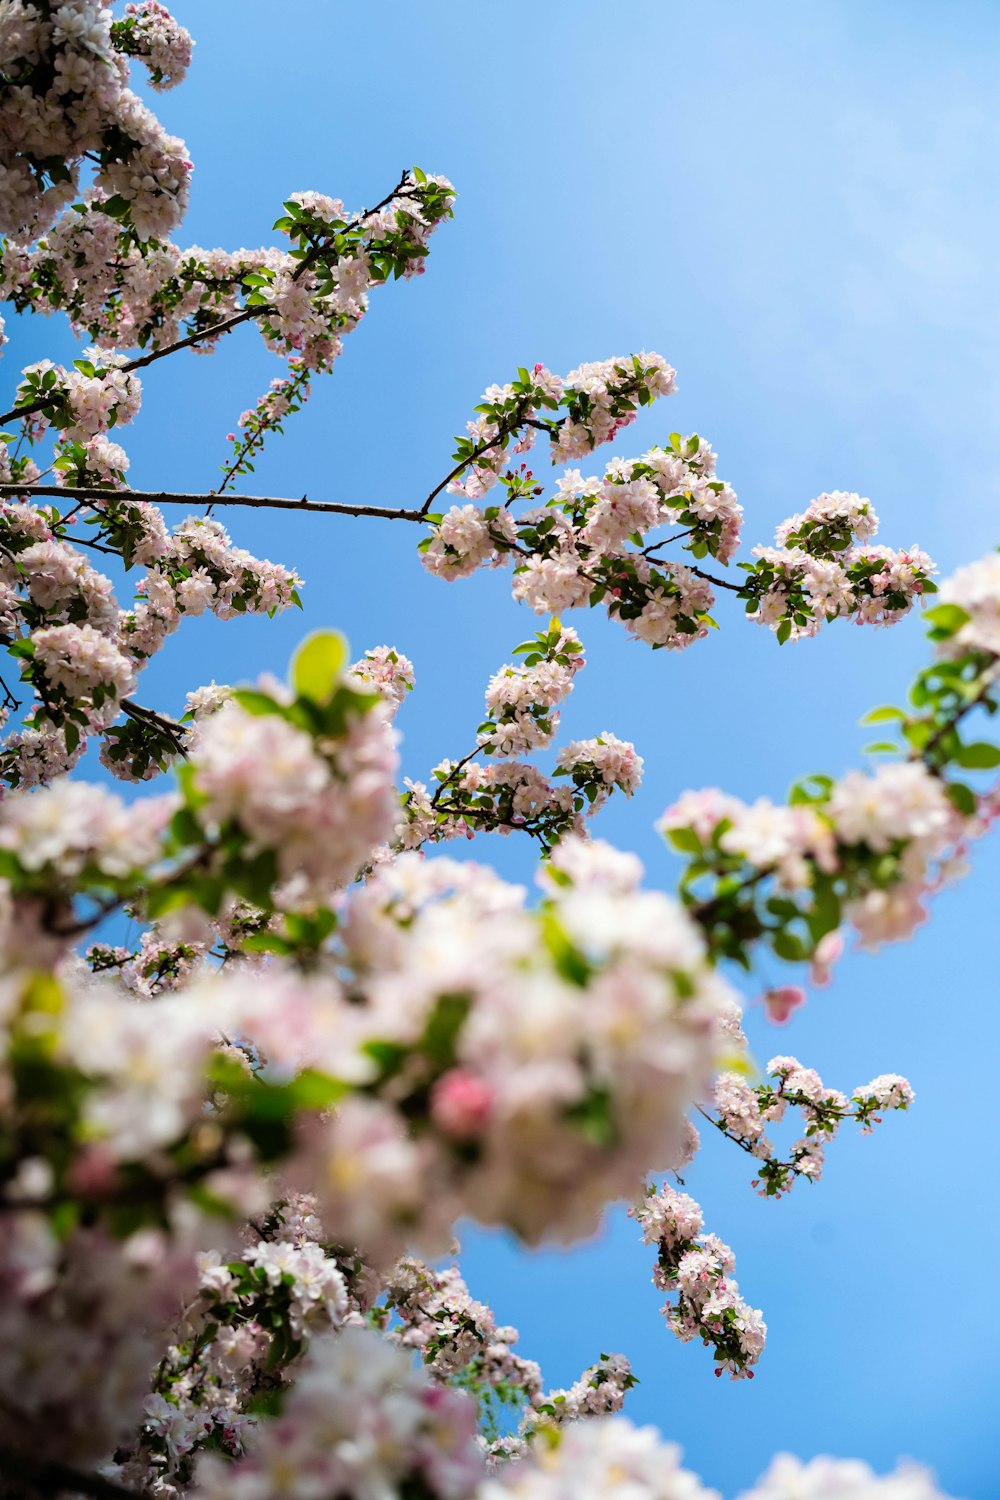 un arbre avec des fleurs blanches et un ciel bleu en arrière-plan